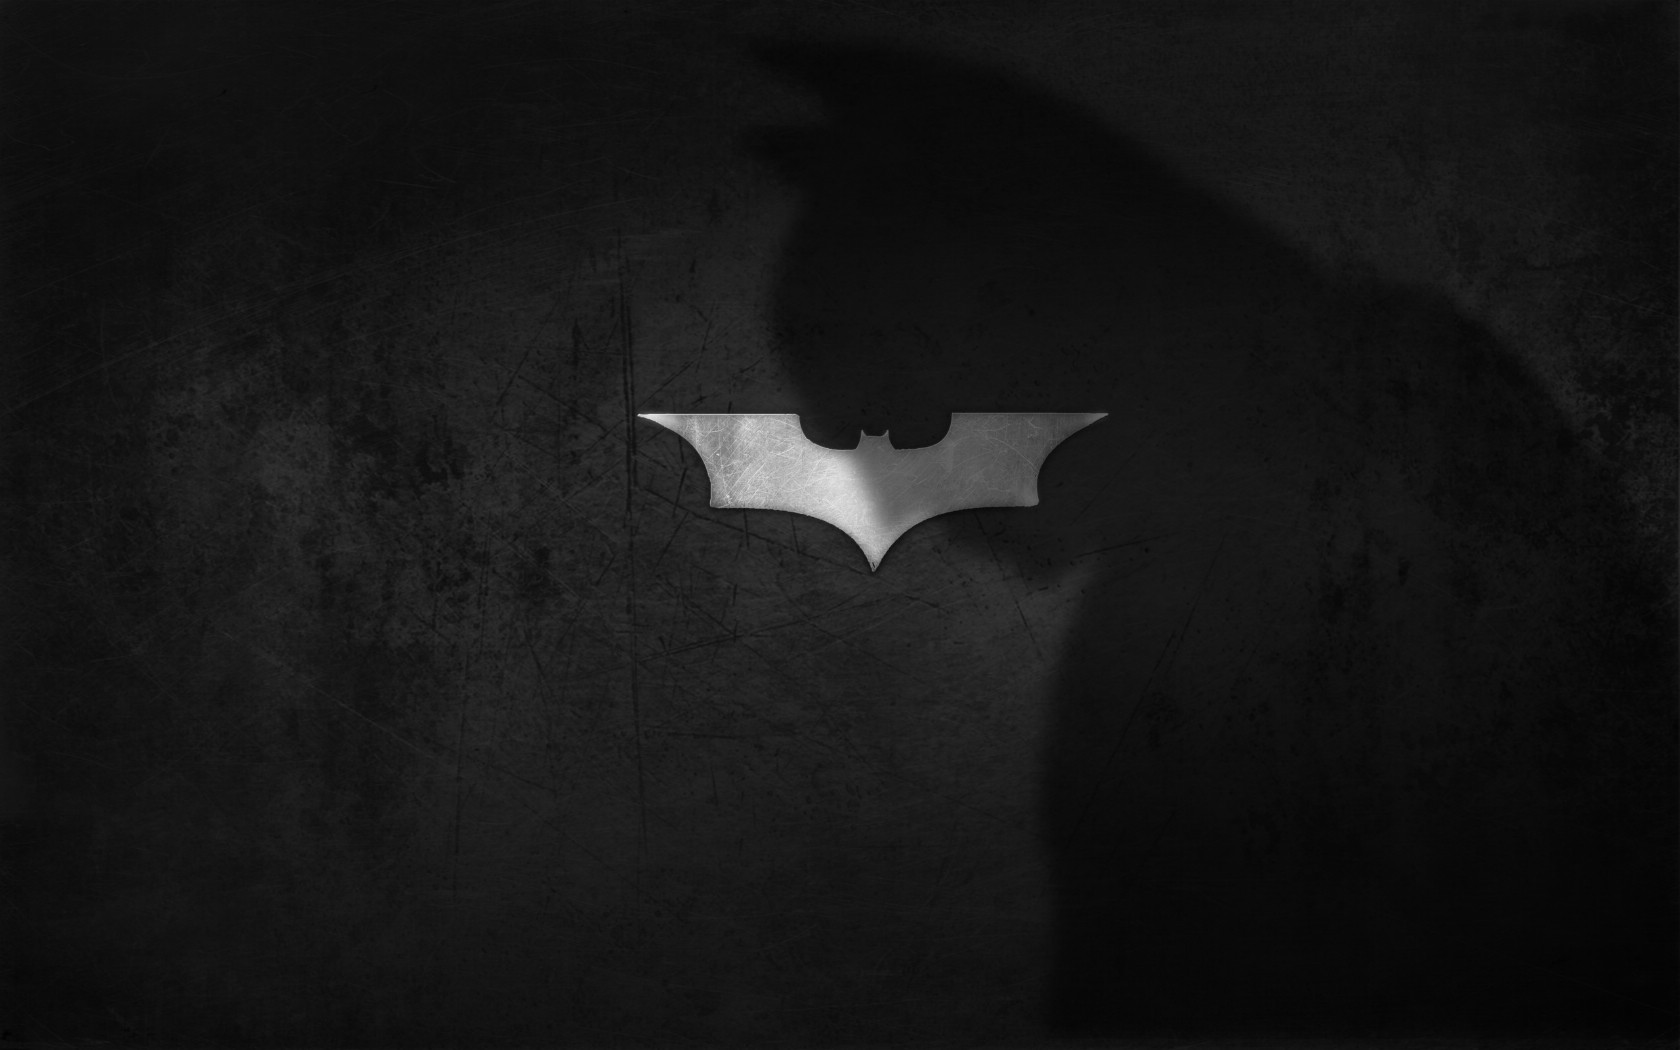 壁纸1680x1050蝙蝠侠 宽屏 桌酷精选一图 壁纸10壁纸 蝙蝠侠（宽屏）精壁纸 蝙蝠侠（宽屏）精图片 蝙蝠侠（宽屏）精素材 精选壁纸 精选图库 精选图片素材桌面壁纸